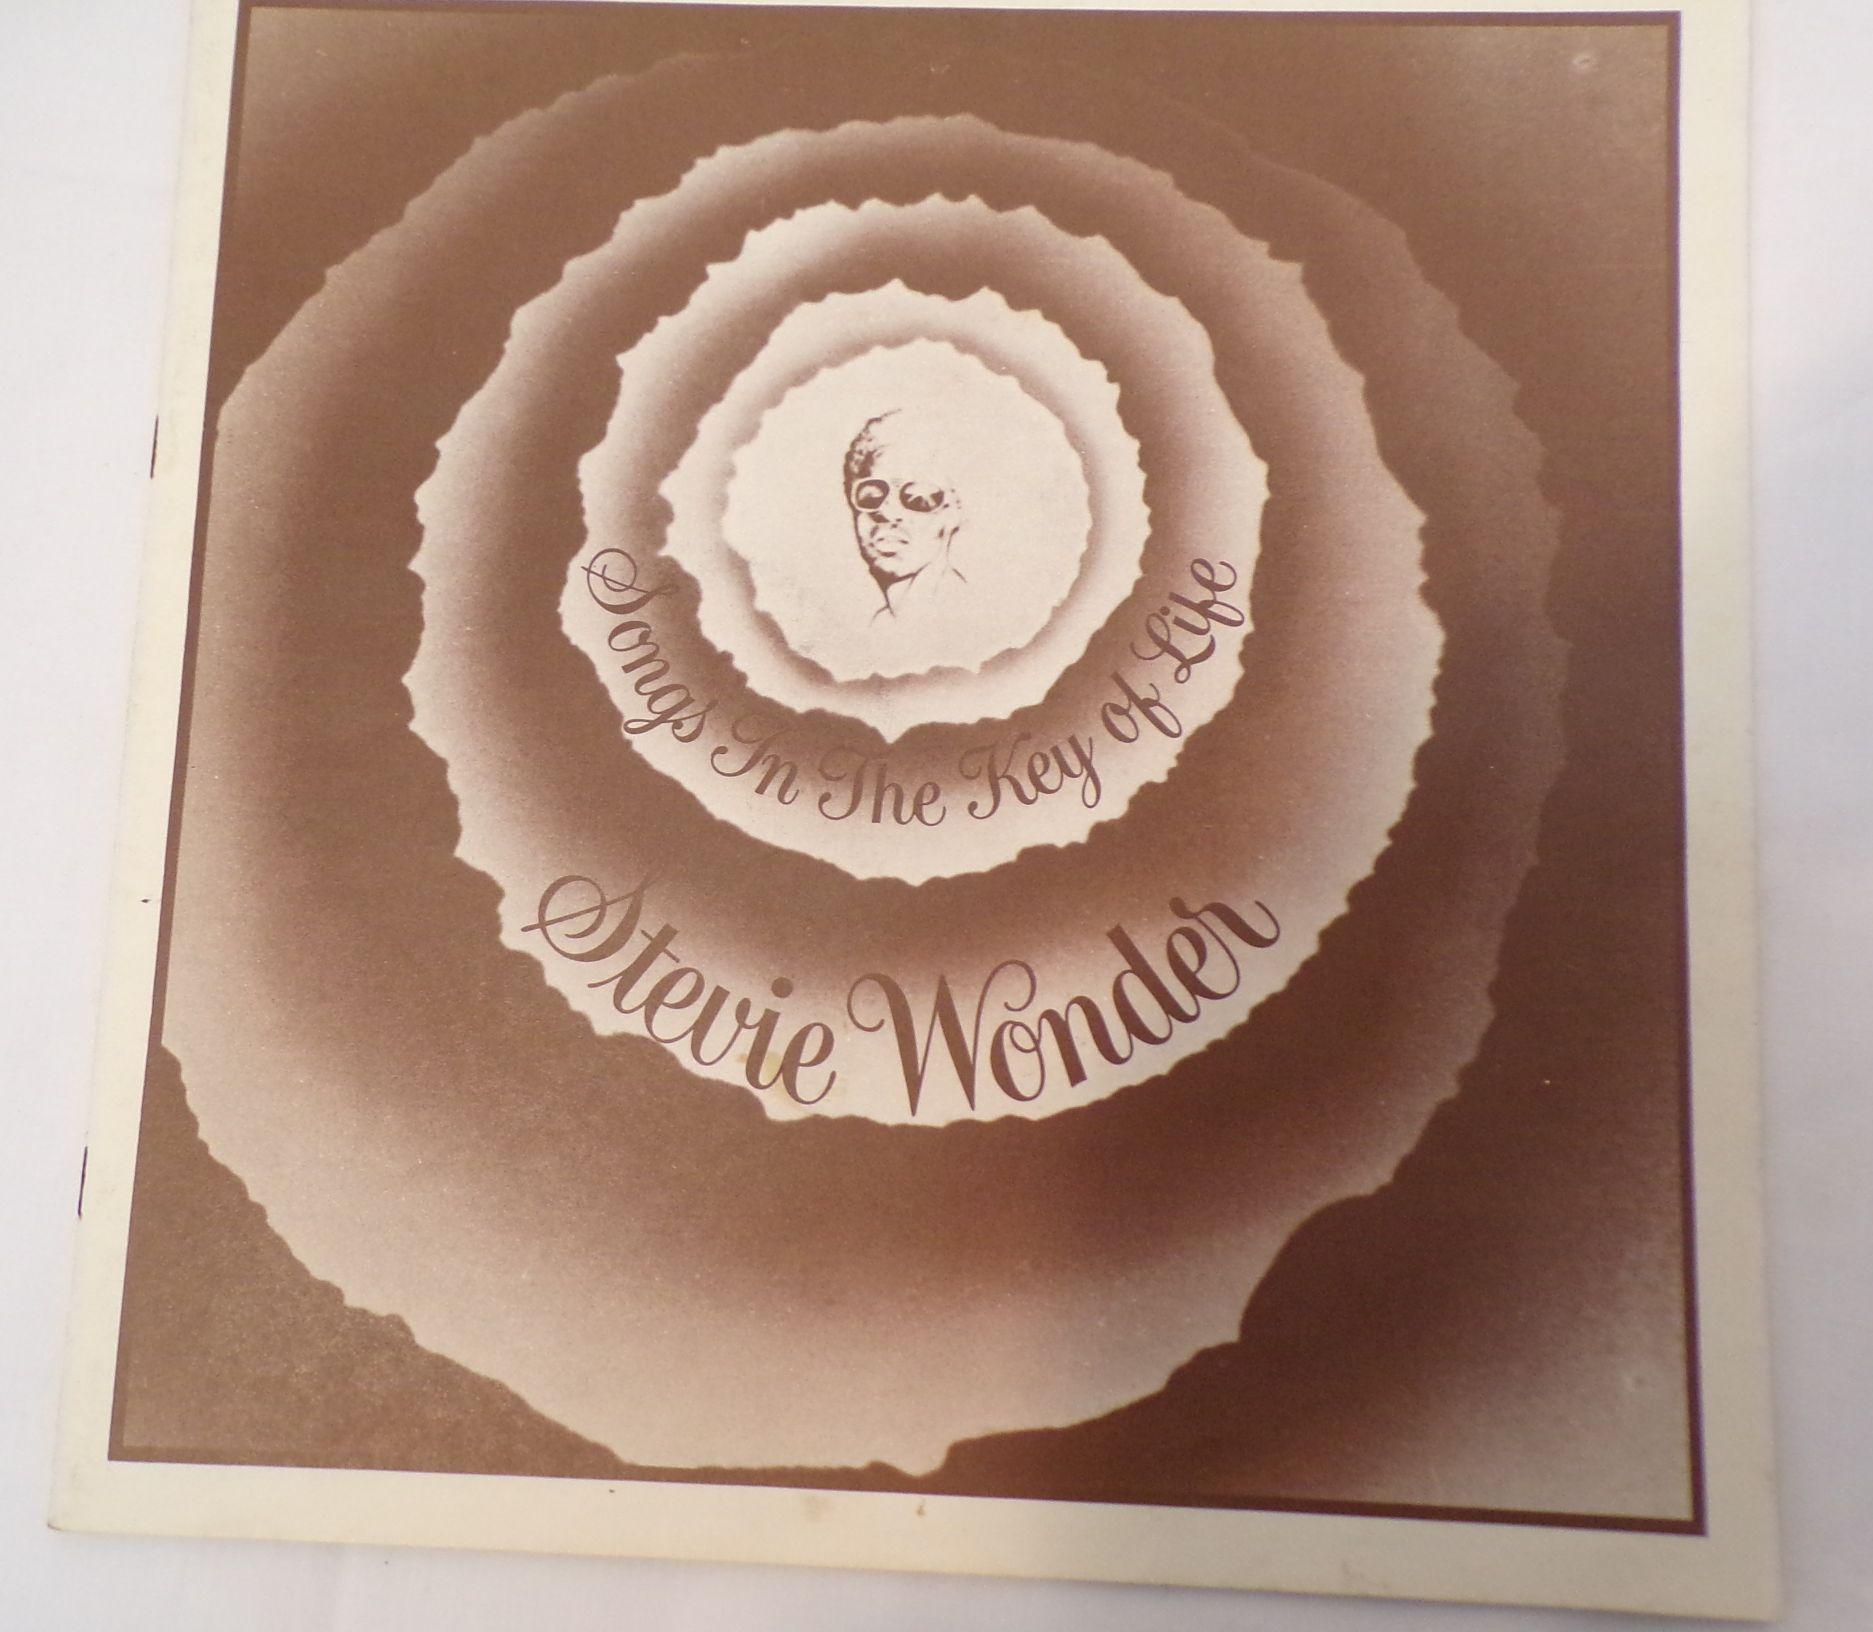 Stevie Wonder- Songs in the Key of Life